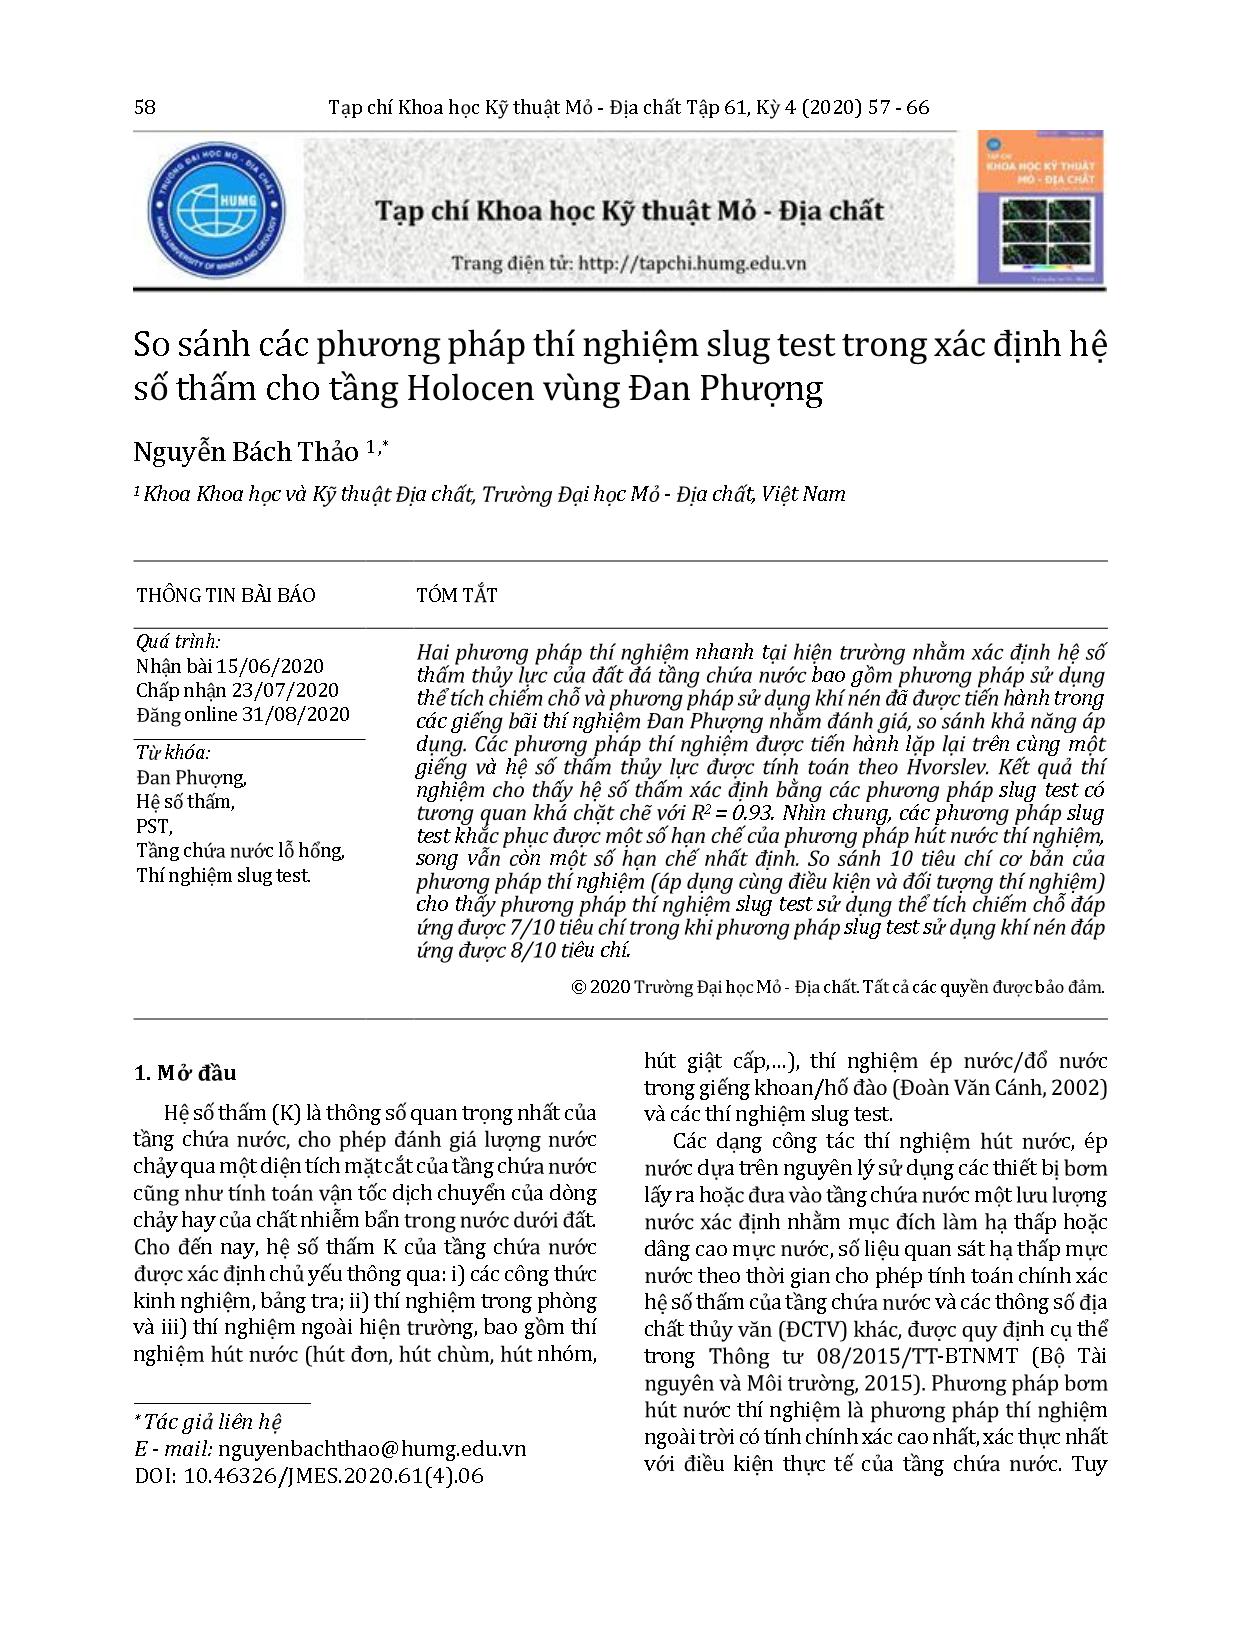 So sánh các phương pháp thí nghiệm slug test trong xác định hệ số thấm cho tầng Holocen vùng Đan Phượng trang 2